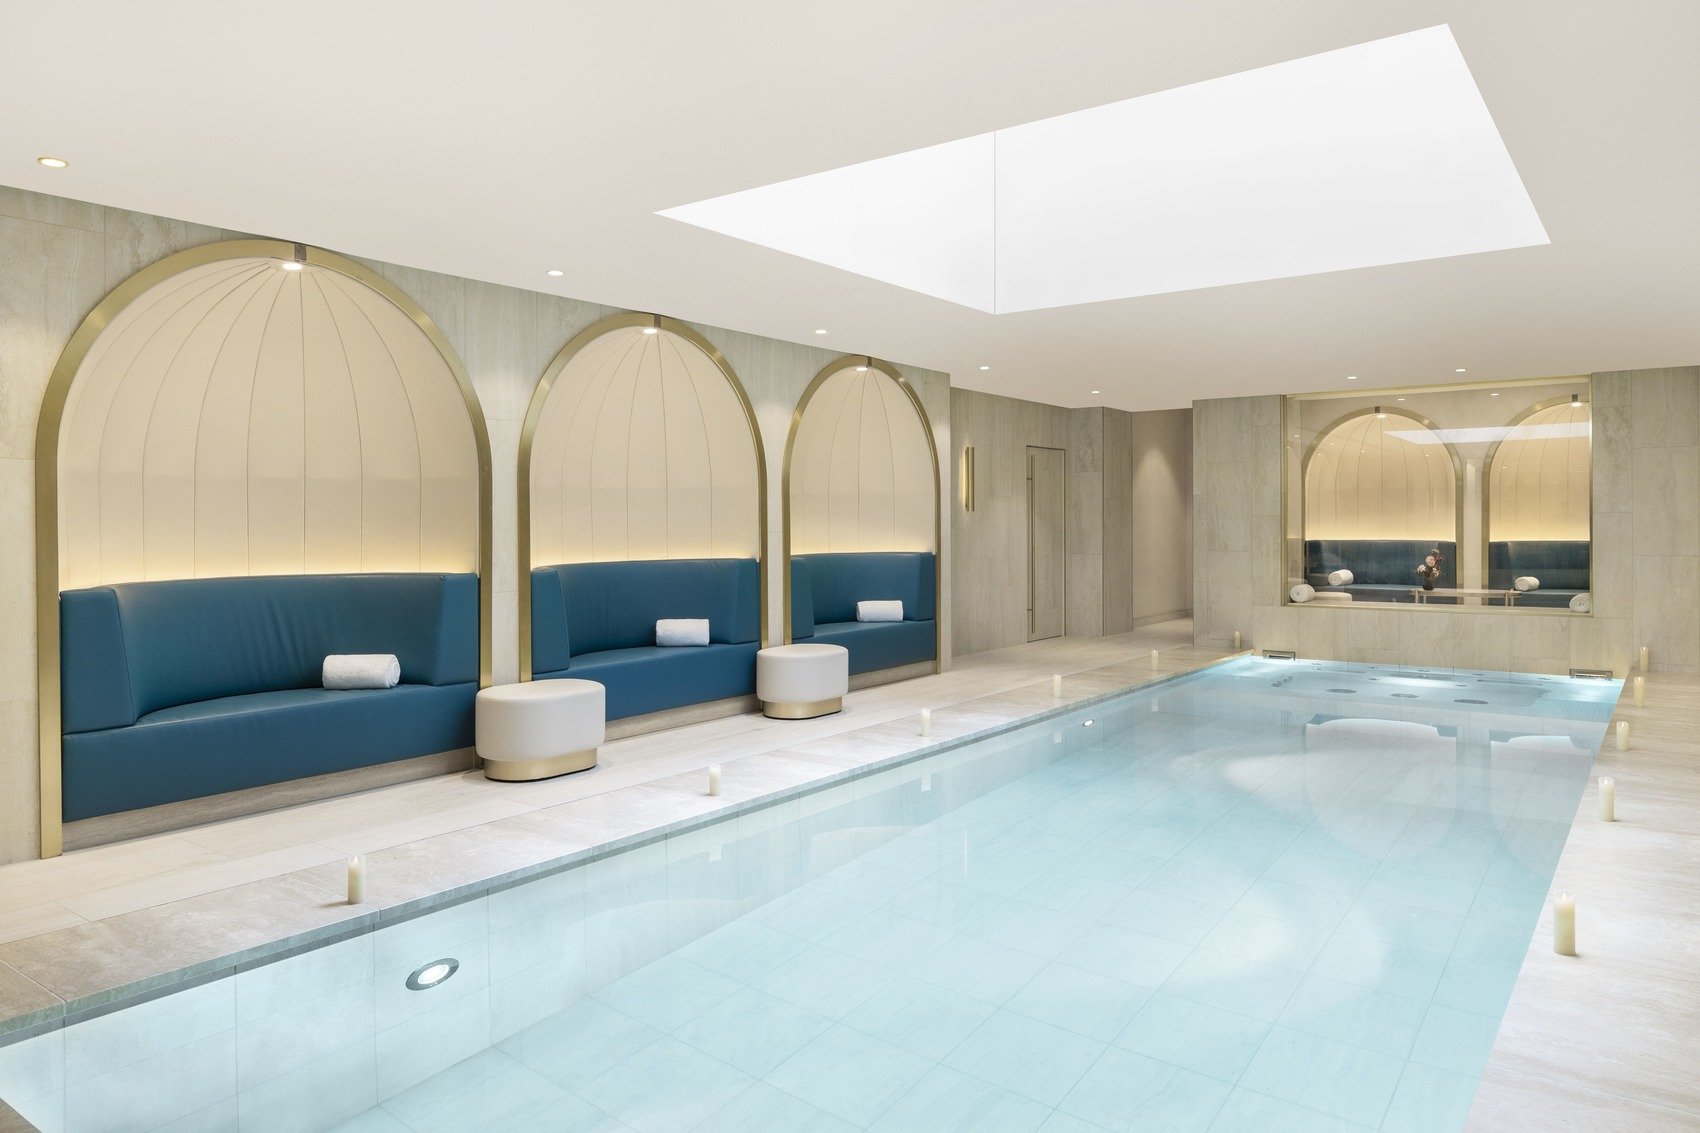 Hôtel de luxe - Maison Albar Hotels Le Vendome 5* - Spa Vendome by Carita Paris massage bien-être